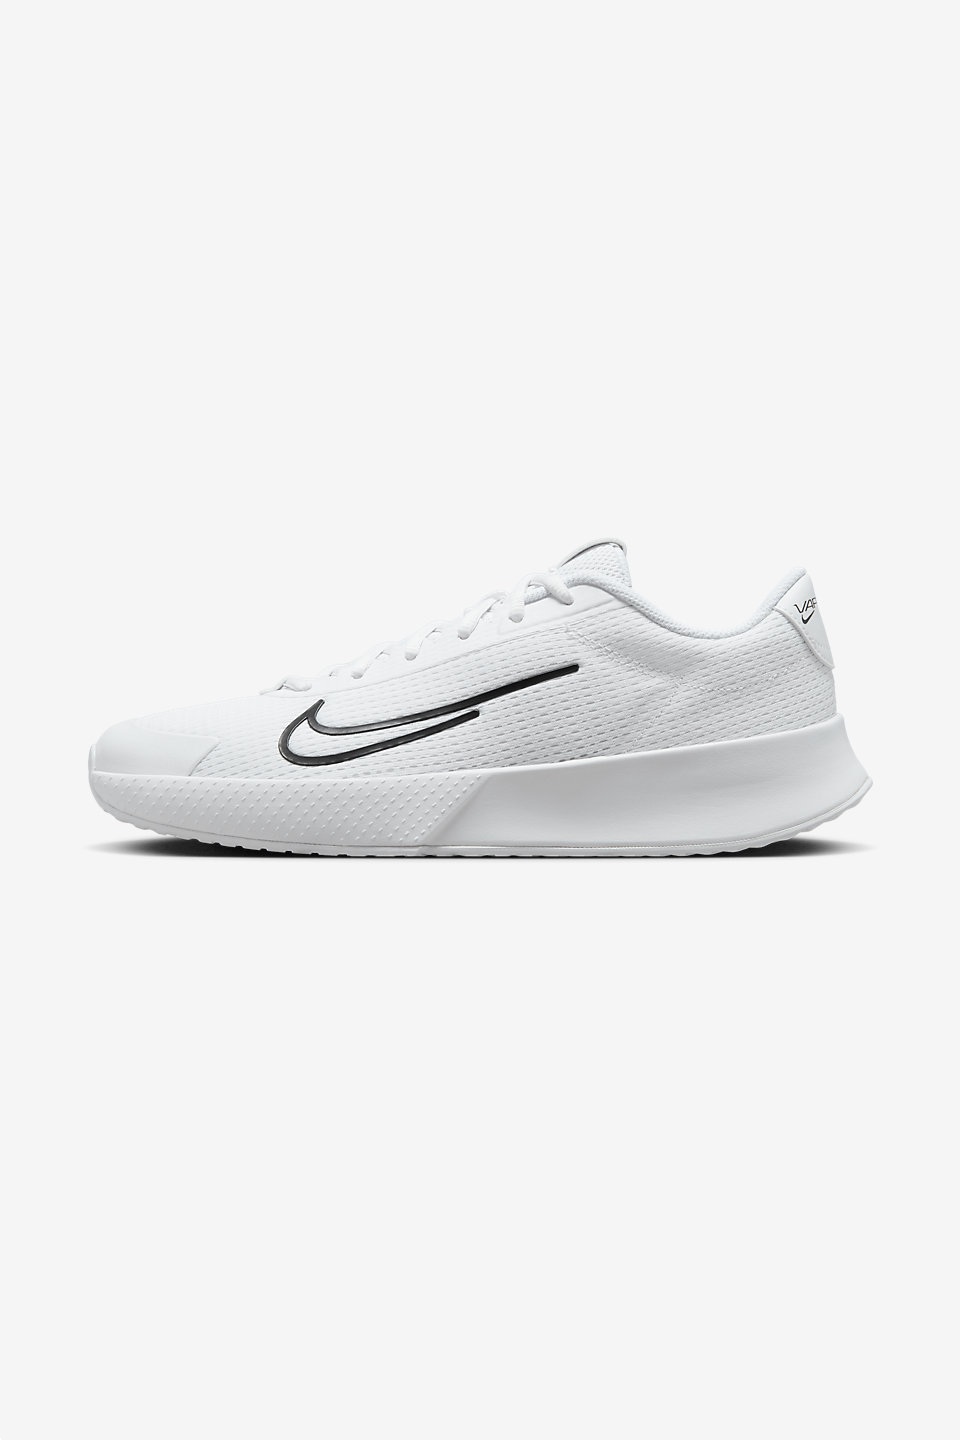 NIKE - NikeCourt Vapor Lite 2 Sert Kort Erkek Tenis Ayakkabısı 